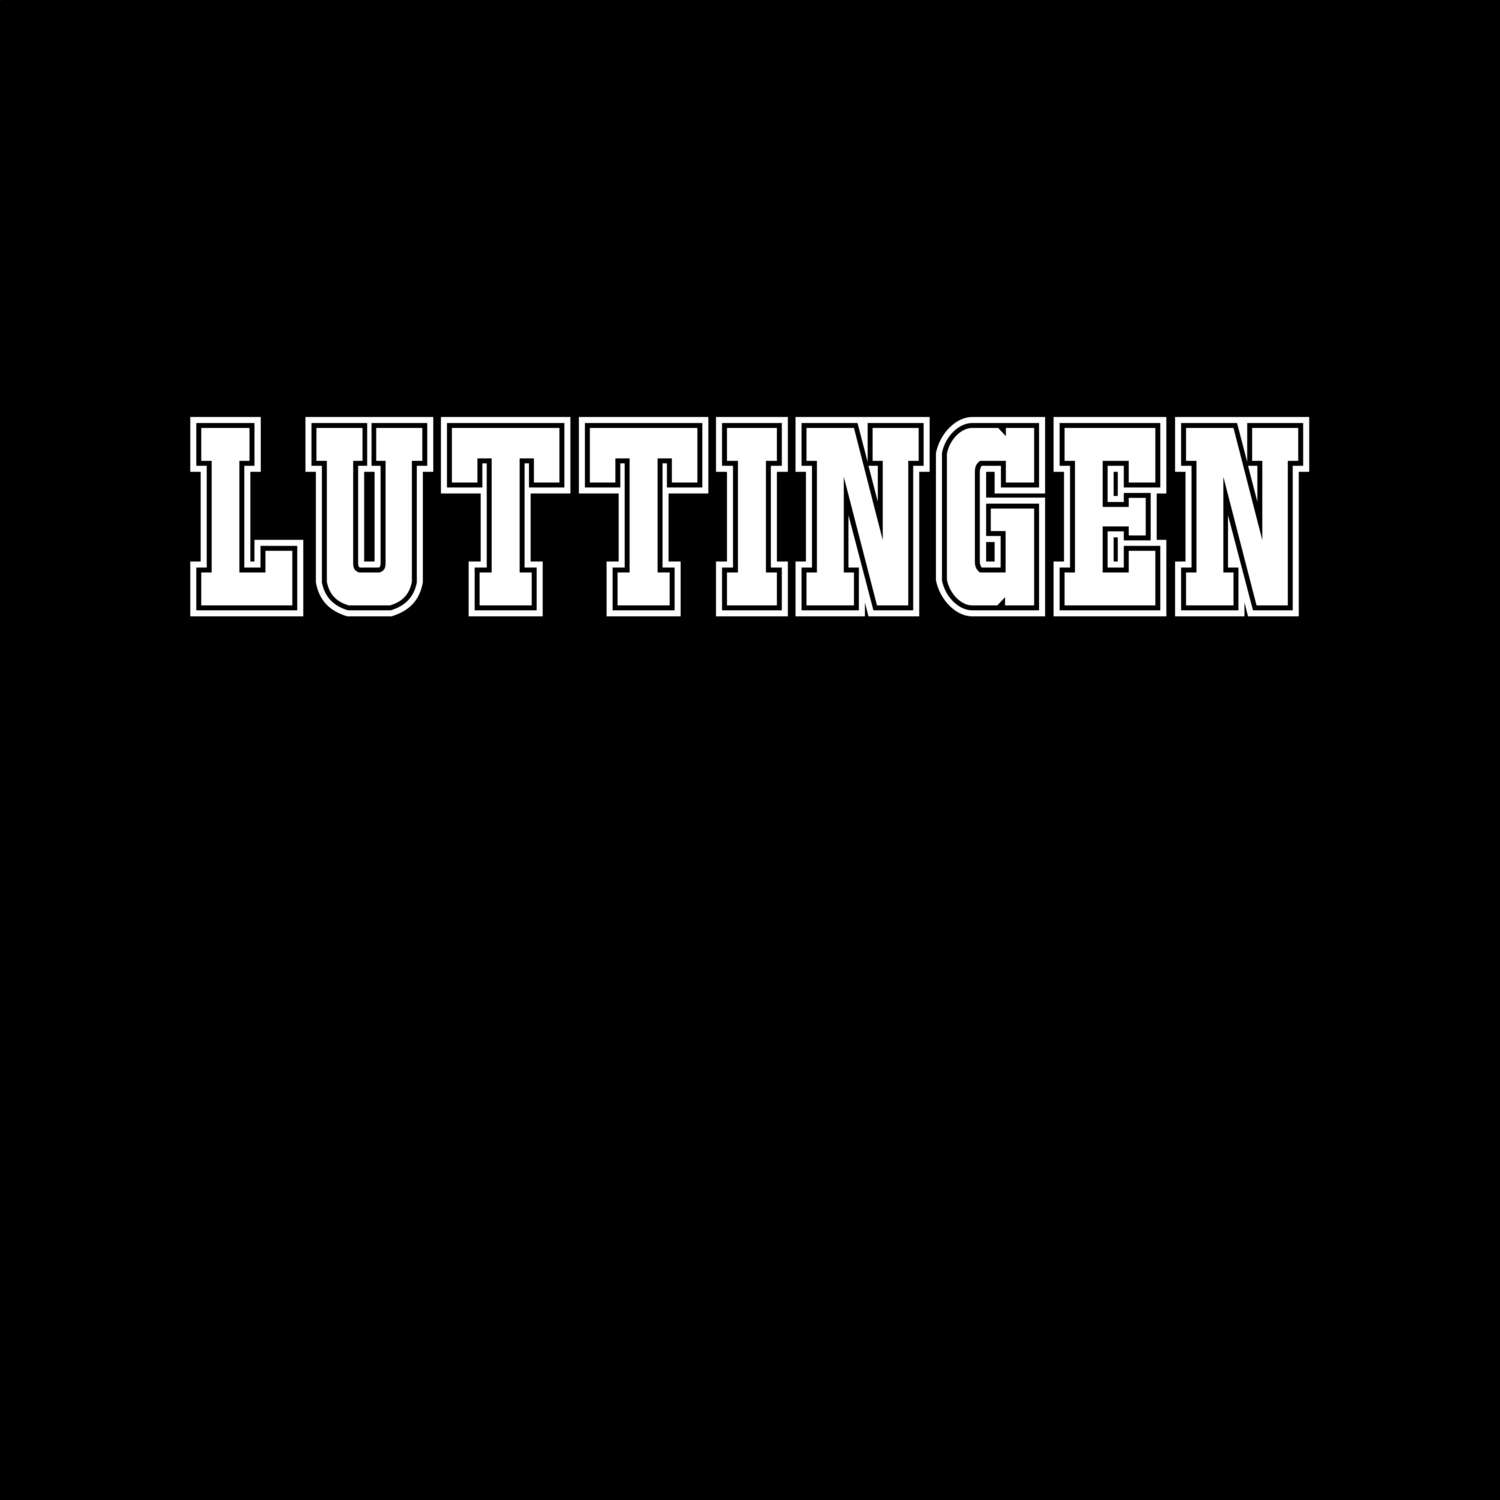 Luttingen T-Shirt »Classic«